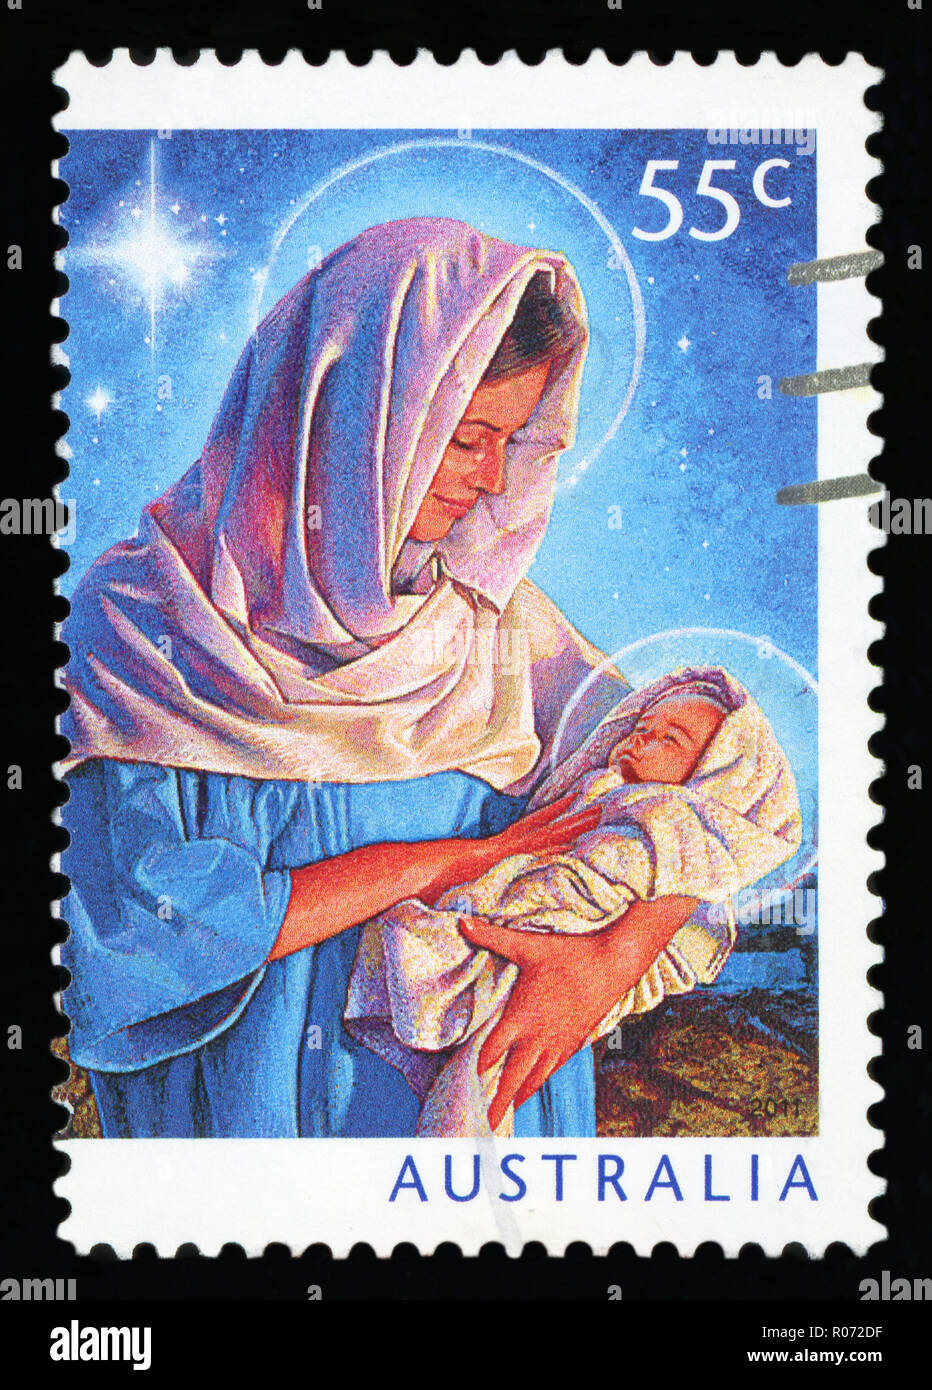 AUSTRALIA - circa 2011: annullato un francobollo da Australia, mostra la figura di Maria e il Bambino Gesù, che commemora il Natale, circa 201 Foto Stock